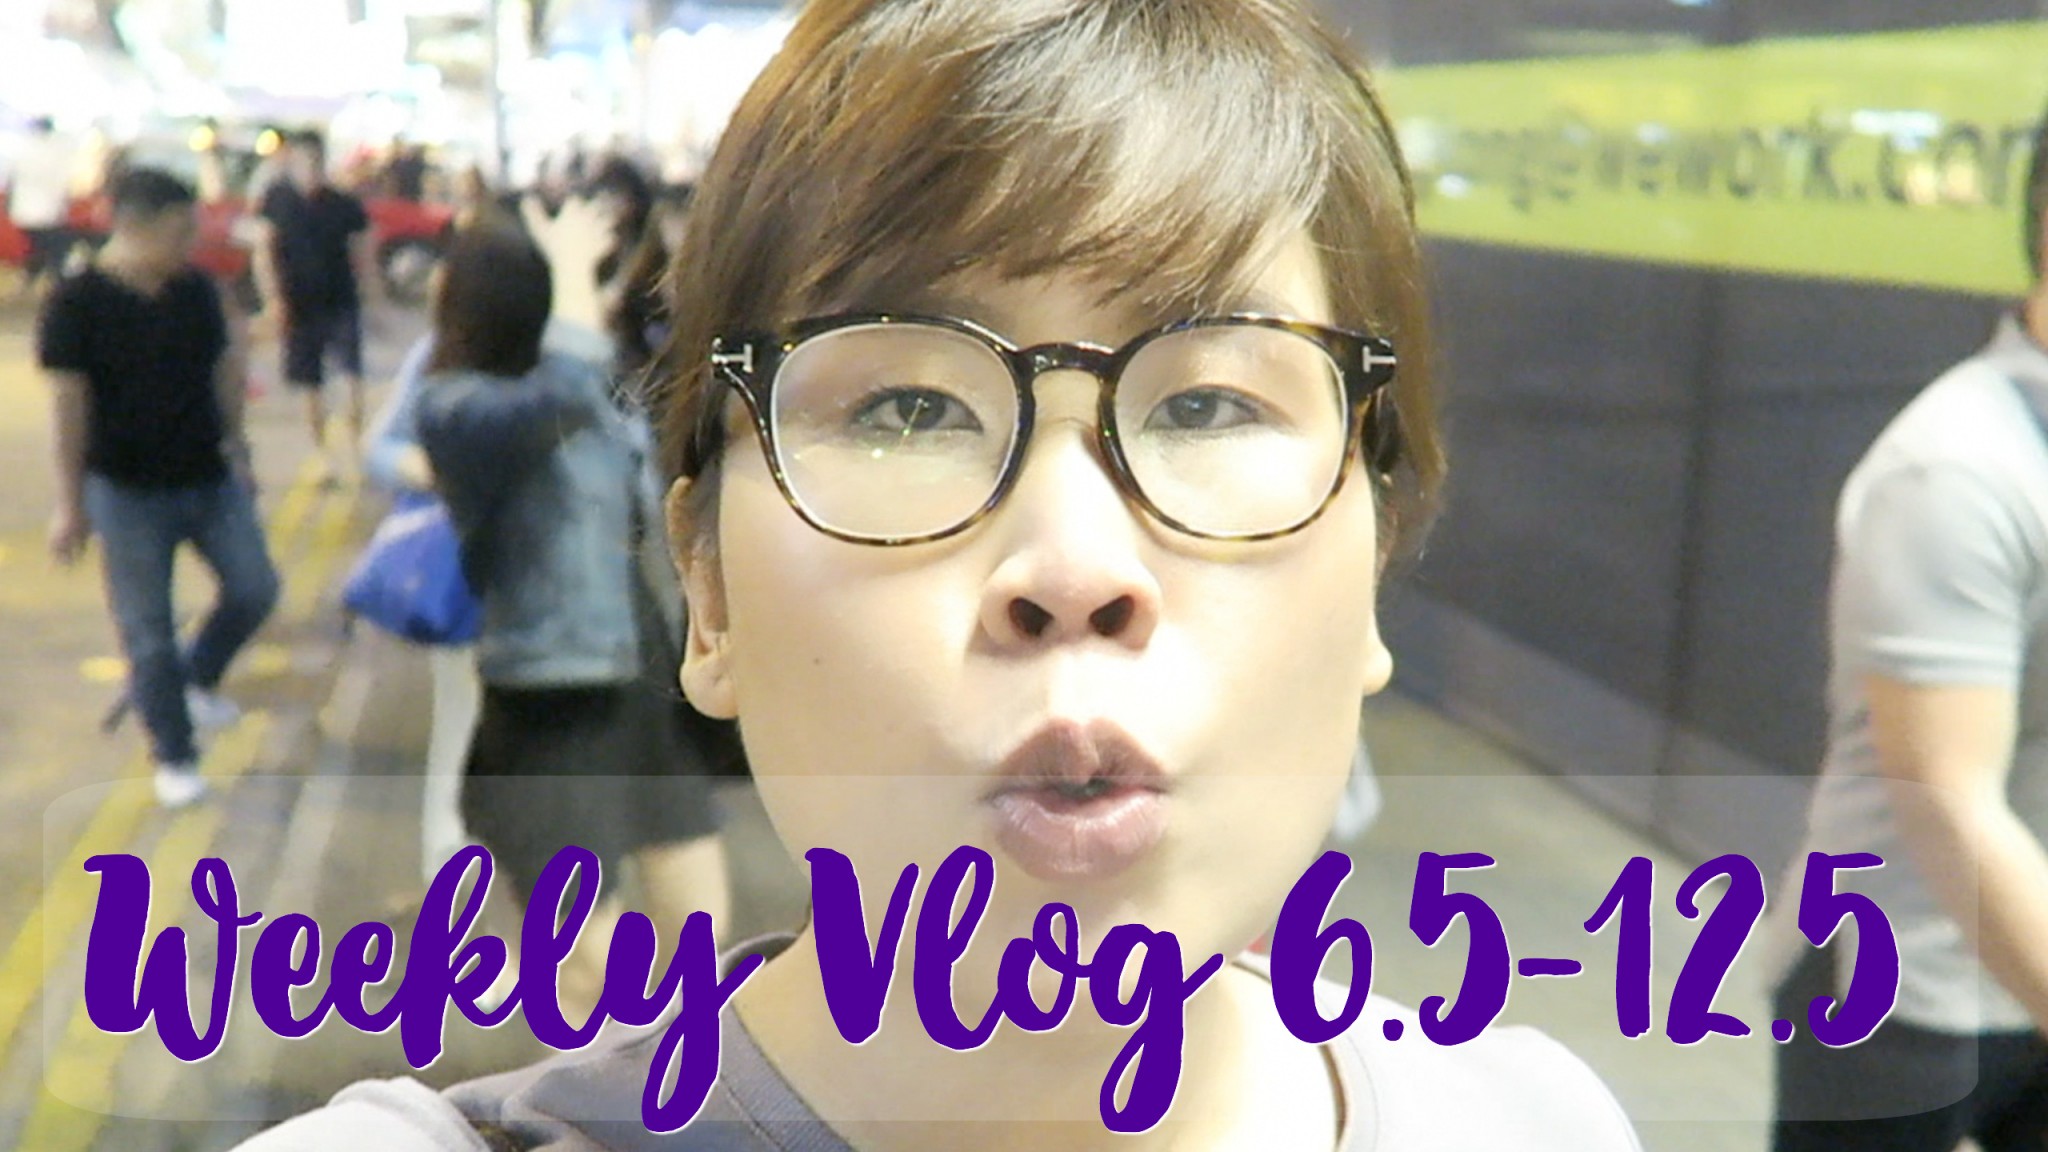 中學趣事 | Weekly Vlog 6.5-12.5